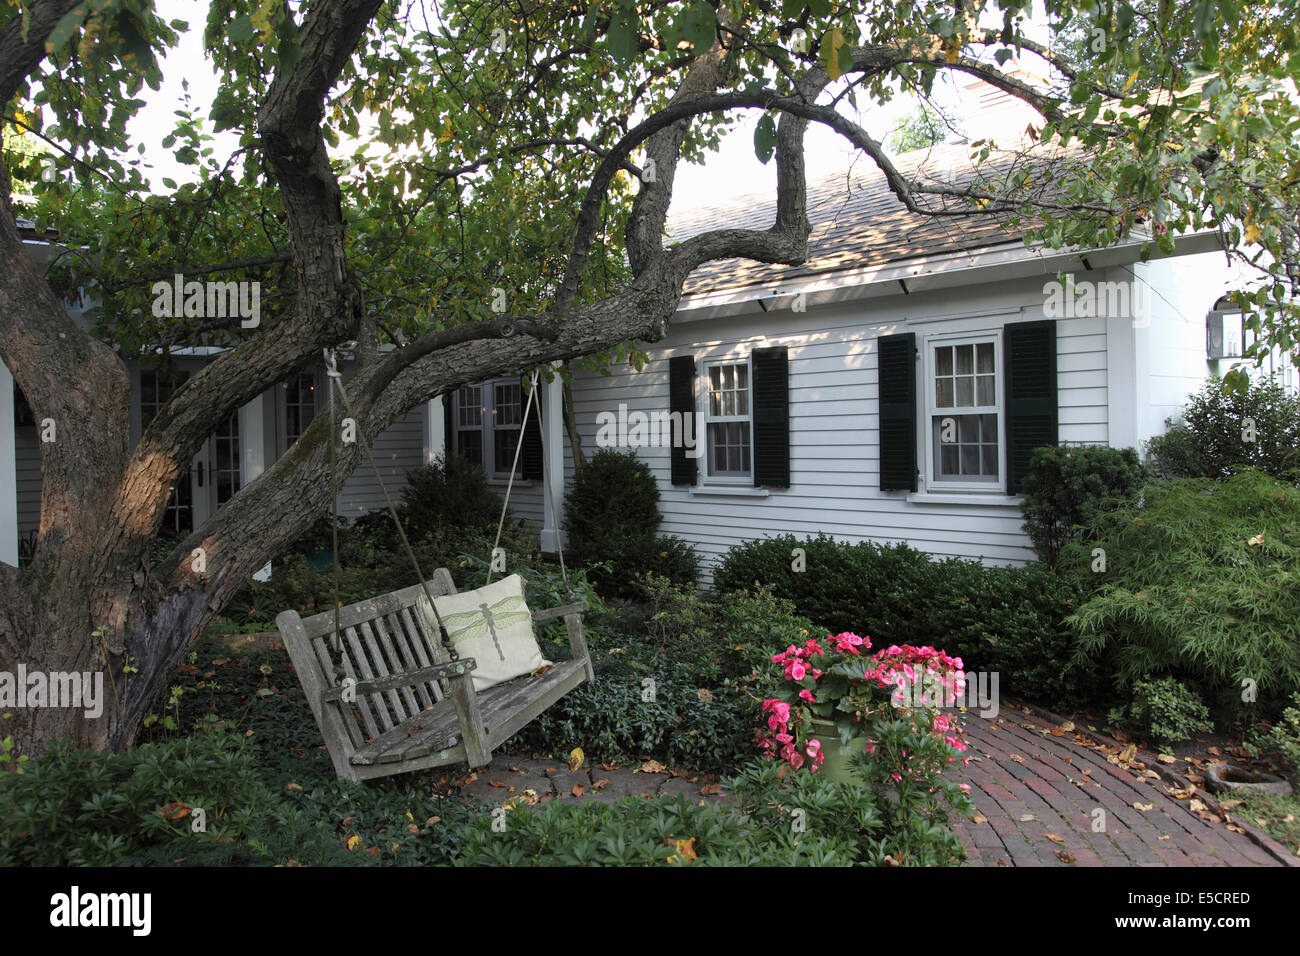 Balançoire en bois suspendu à un arbre derrière une maison coloniale blanche avec des volets noirs dans résidence privée, USA. Banque D'Images